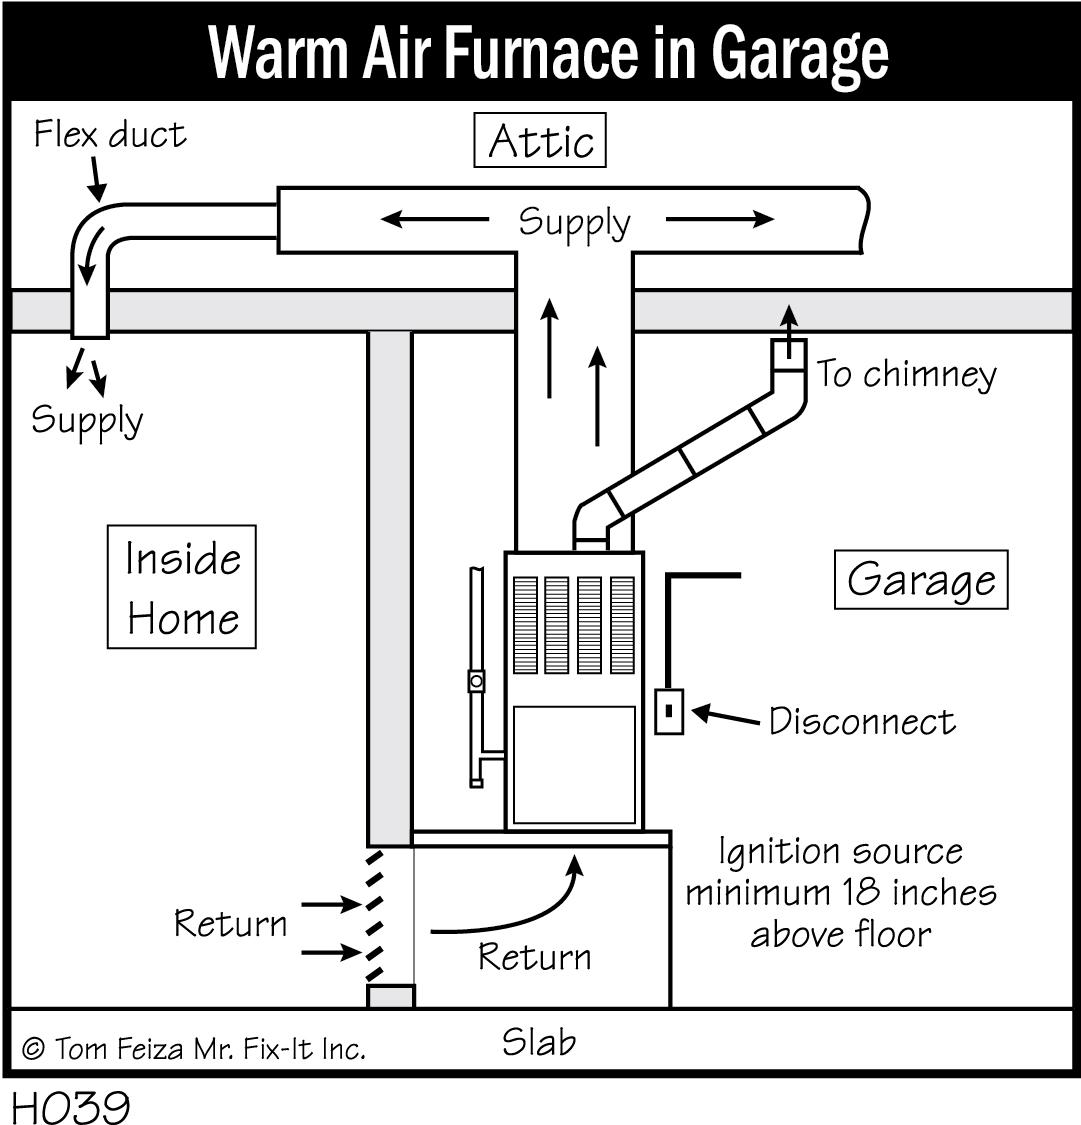 H039 - Warm Air Furnace in Garage